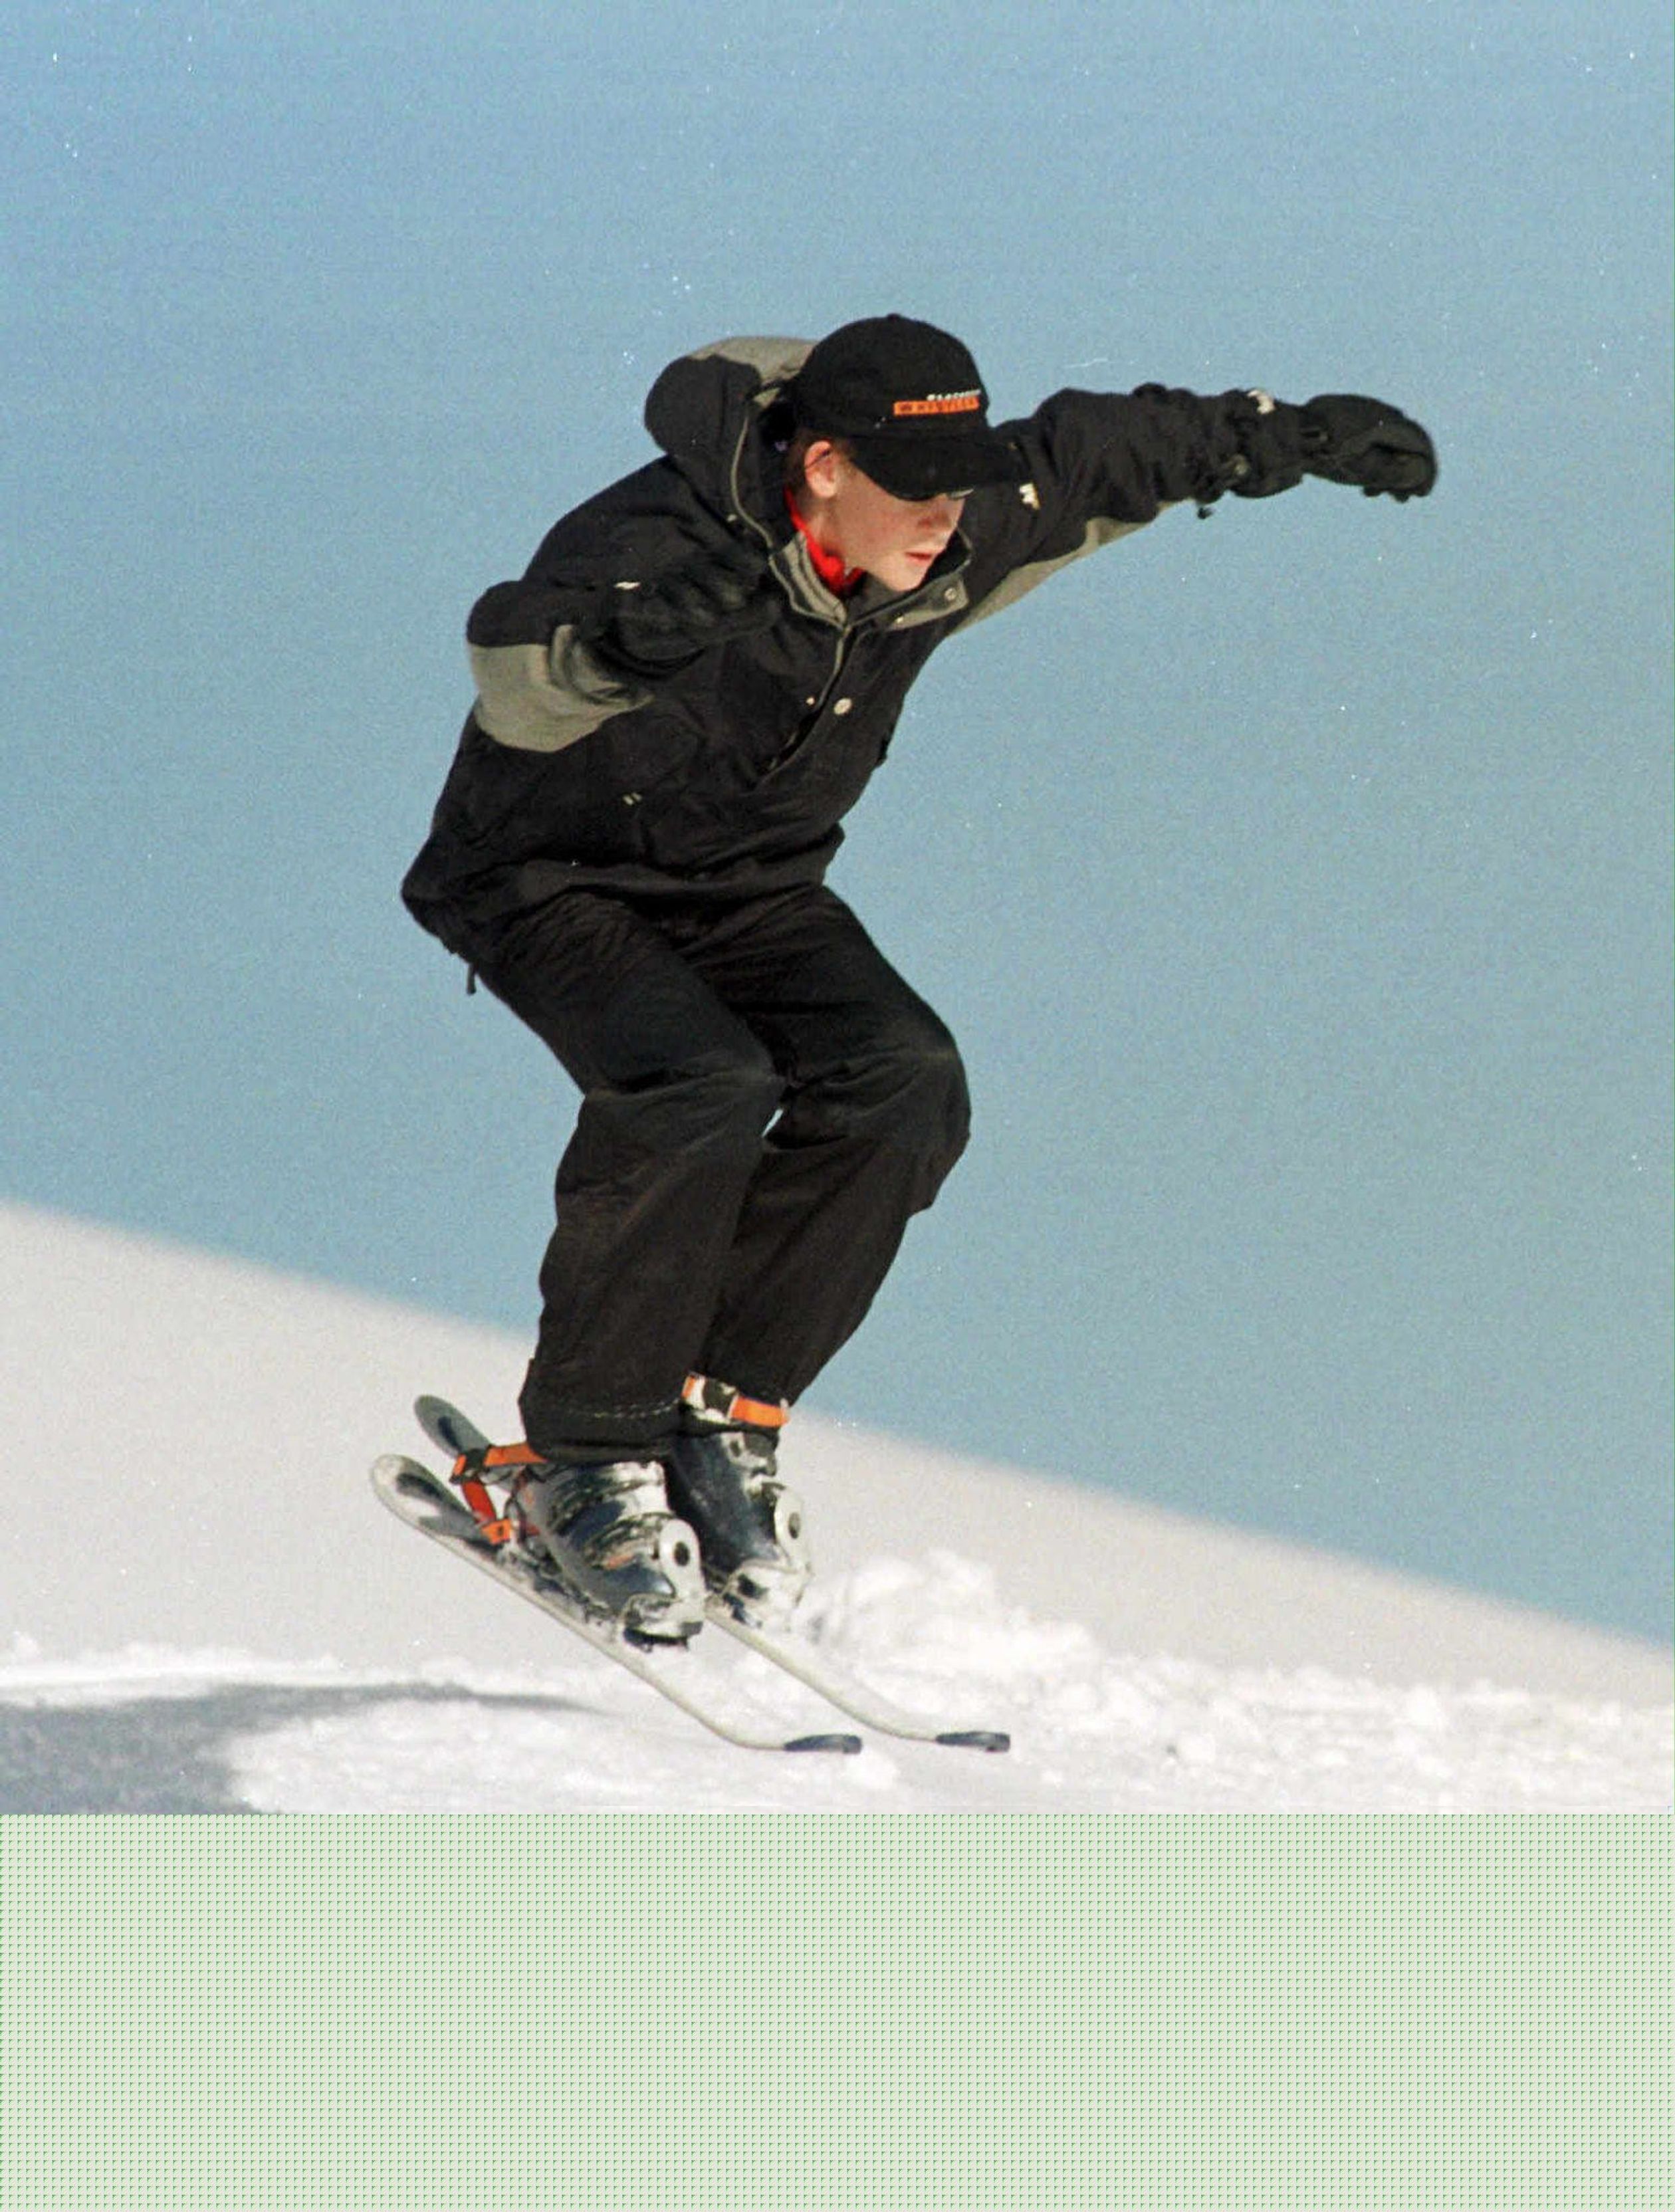 1999: Prins Harry, veertien jaar oud, springt over een sneeuwheuvel in het Zwitserse skigebied